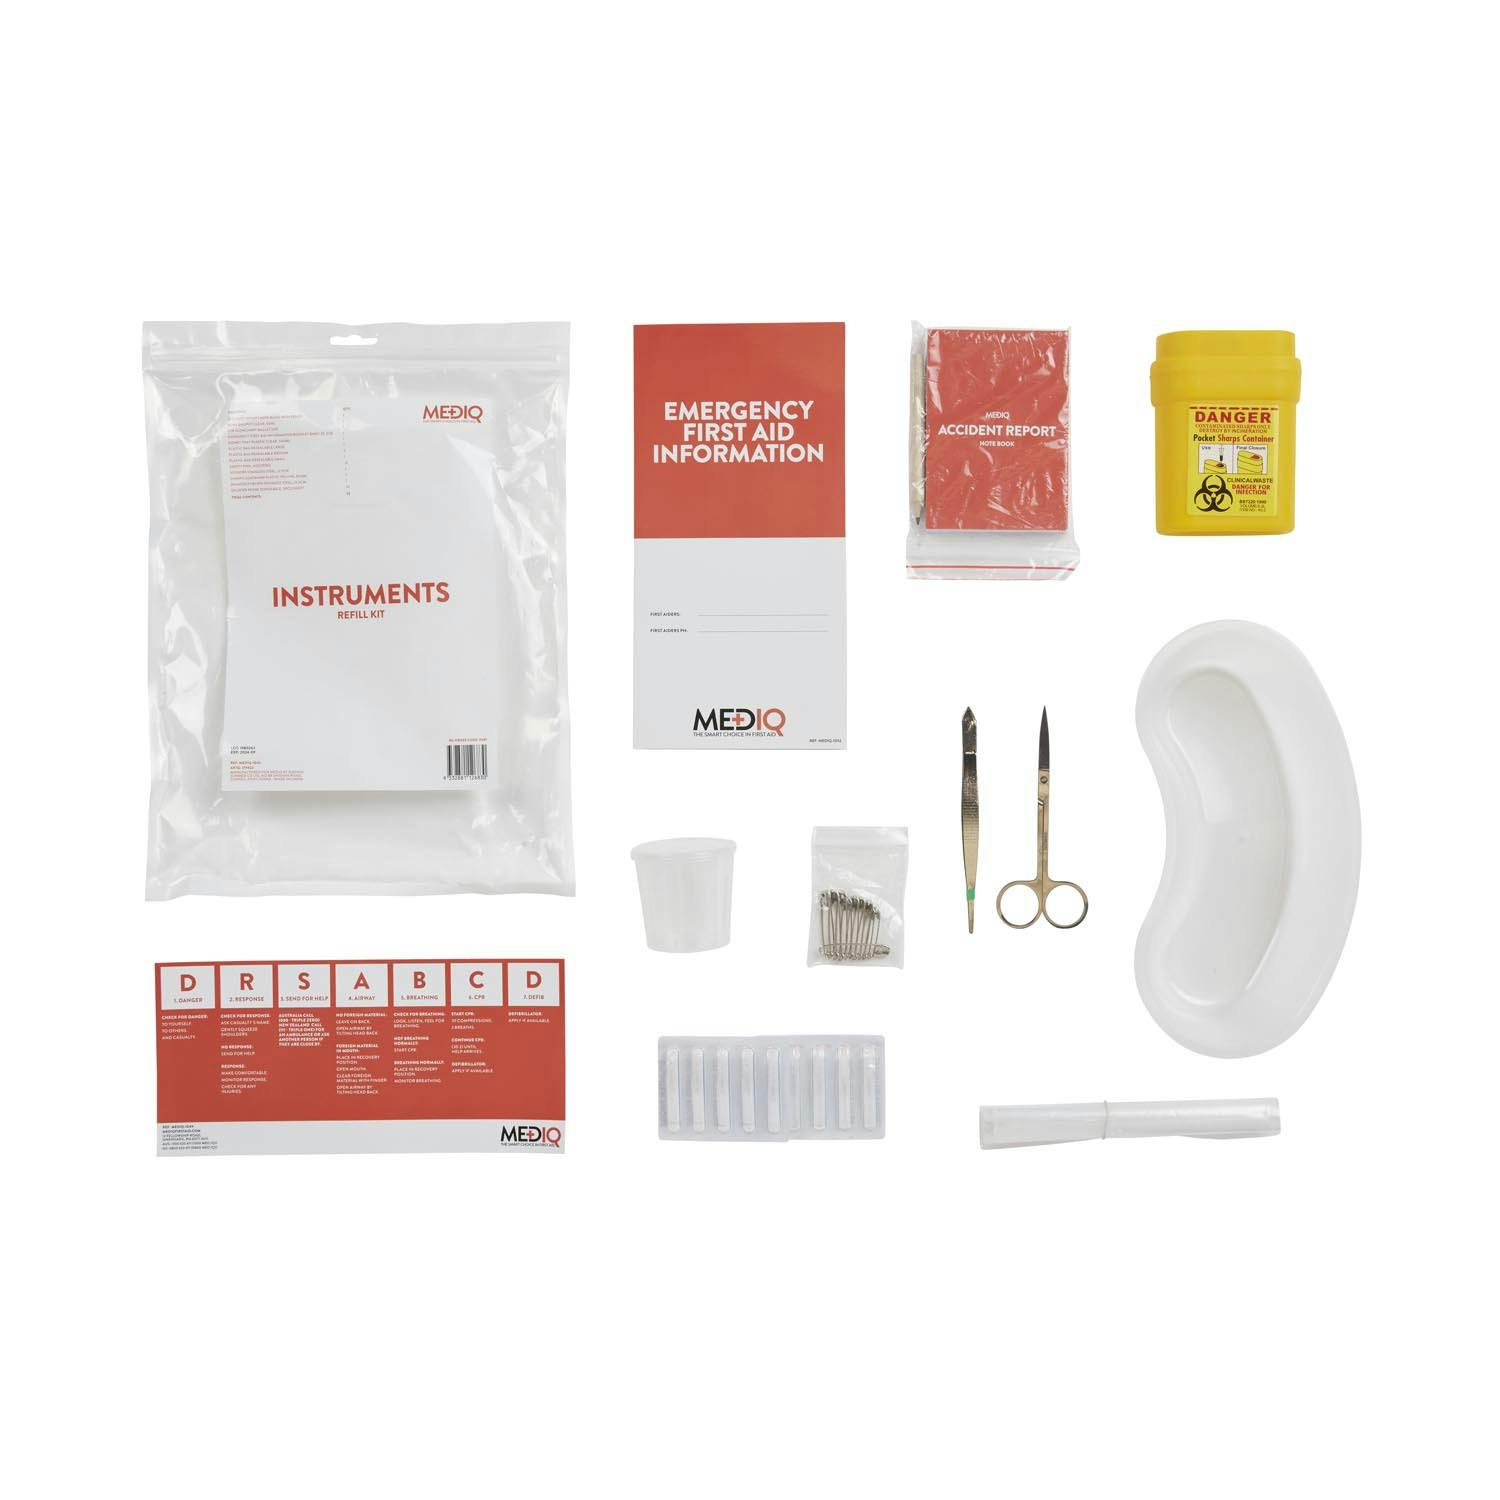 MEDIQ First Aid Kit Refill Module #1 - Instruments